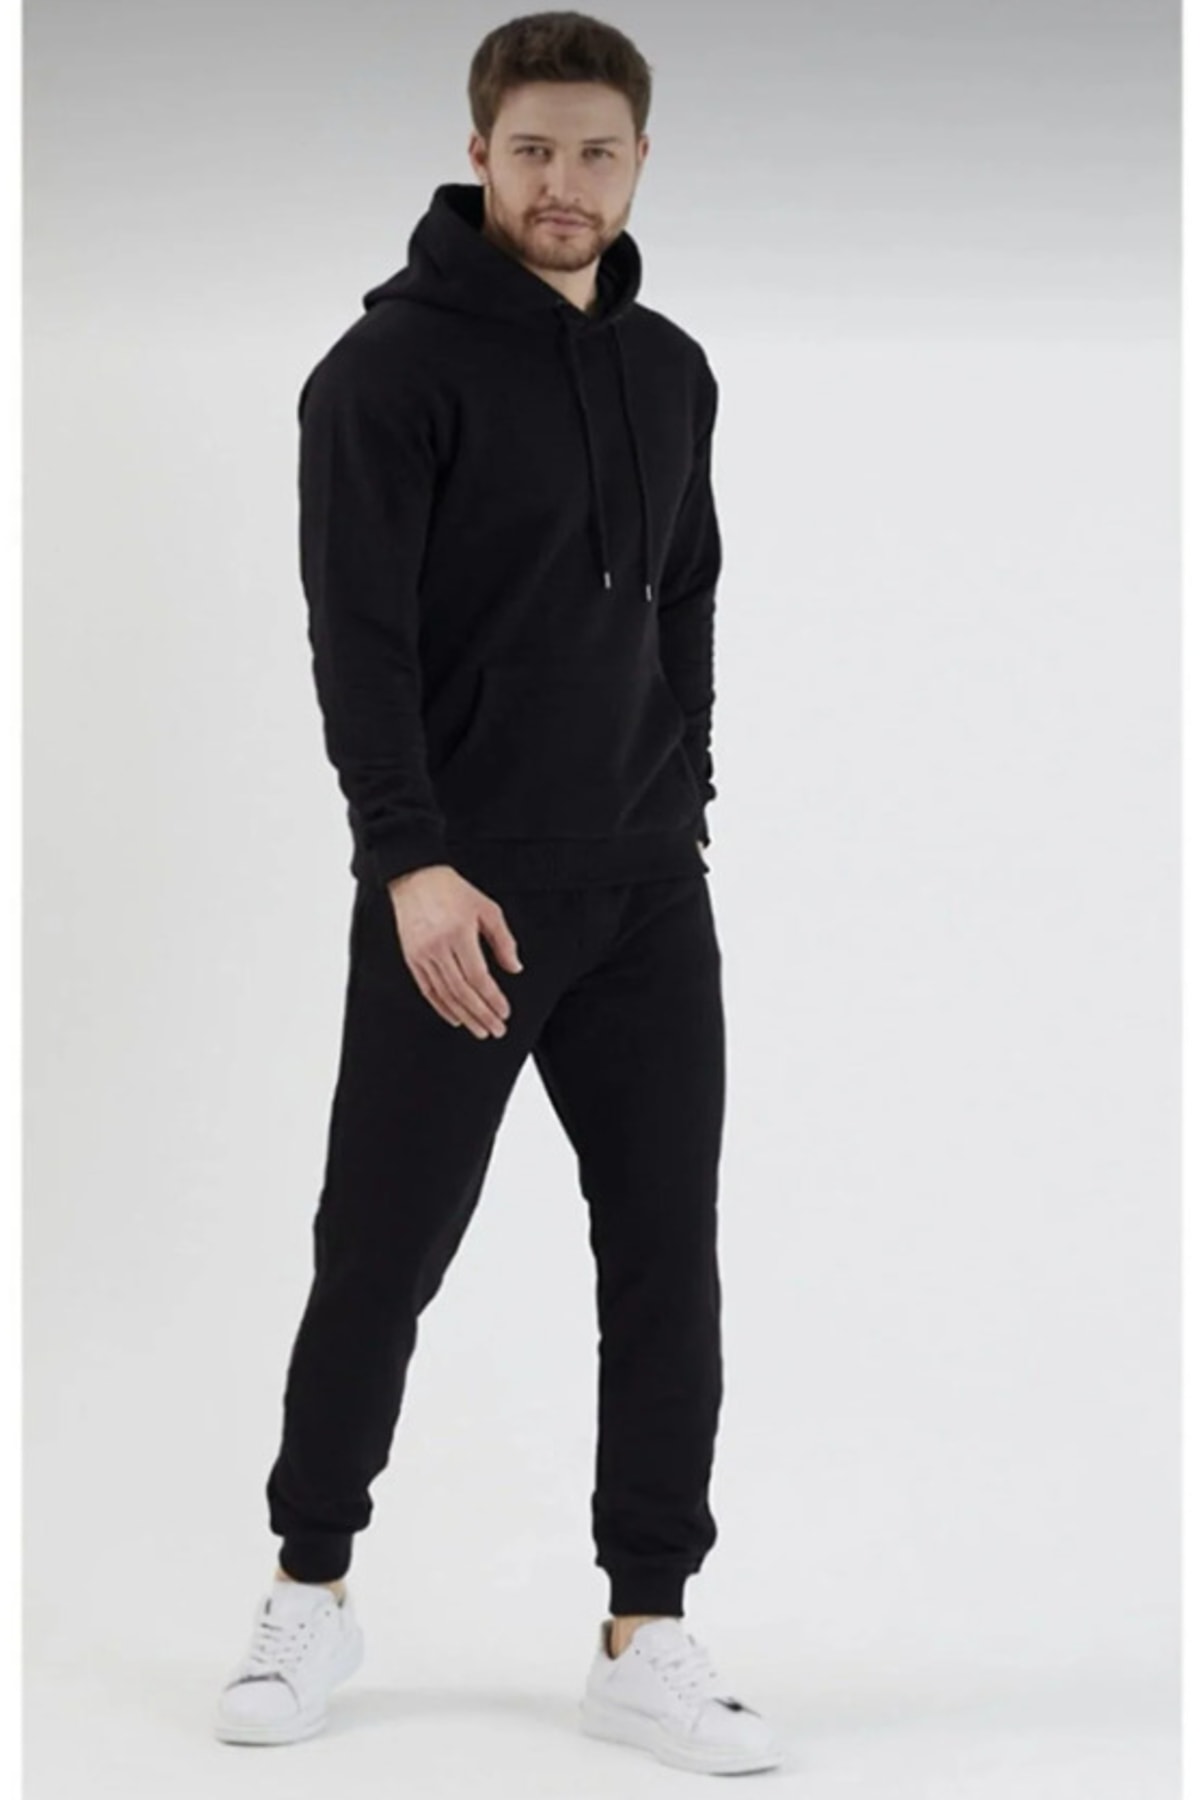 JustBS Kapüşonlu Siyah Kapitone Ceket-gri Eşofman Altı - Beyaz Oversize T-shirt 3’lü Set